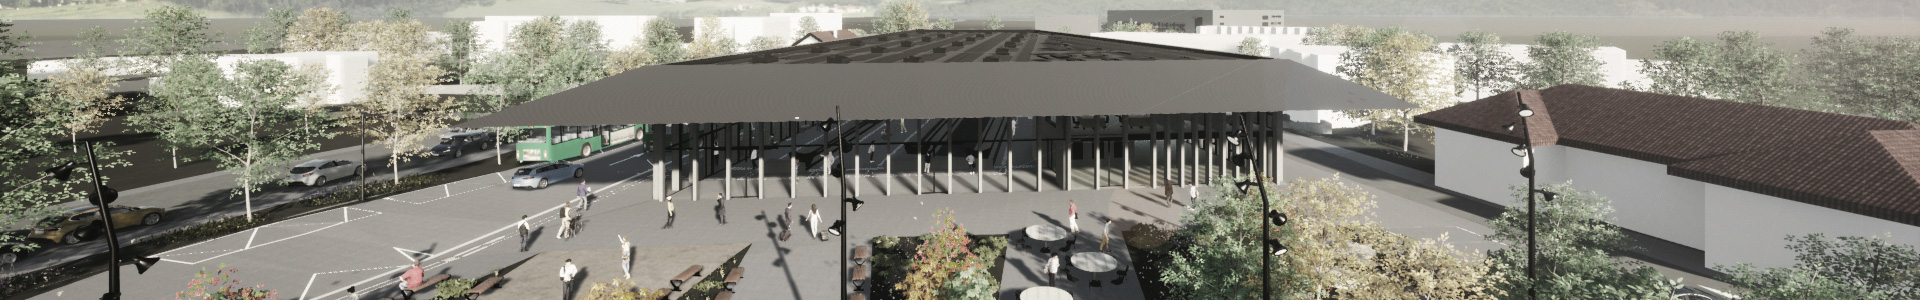 image 3D du projet de modernisation de la gare de Bière